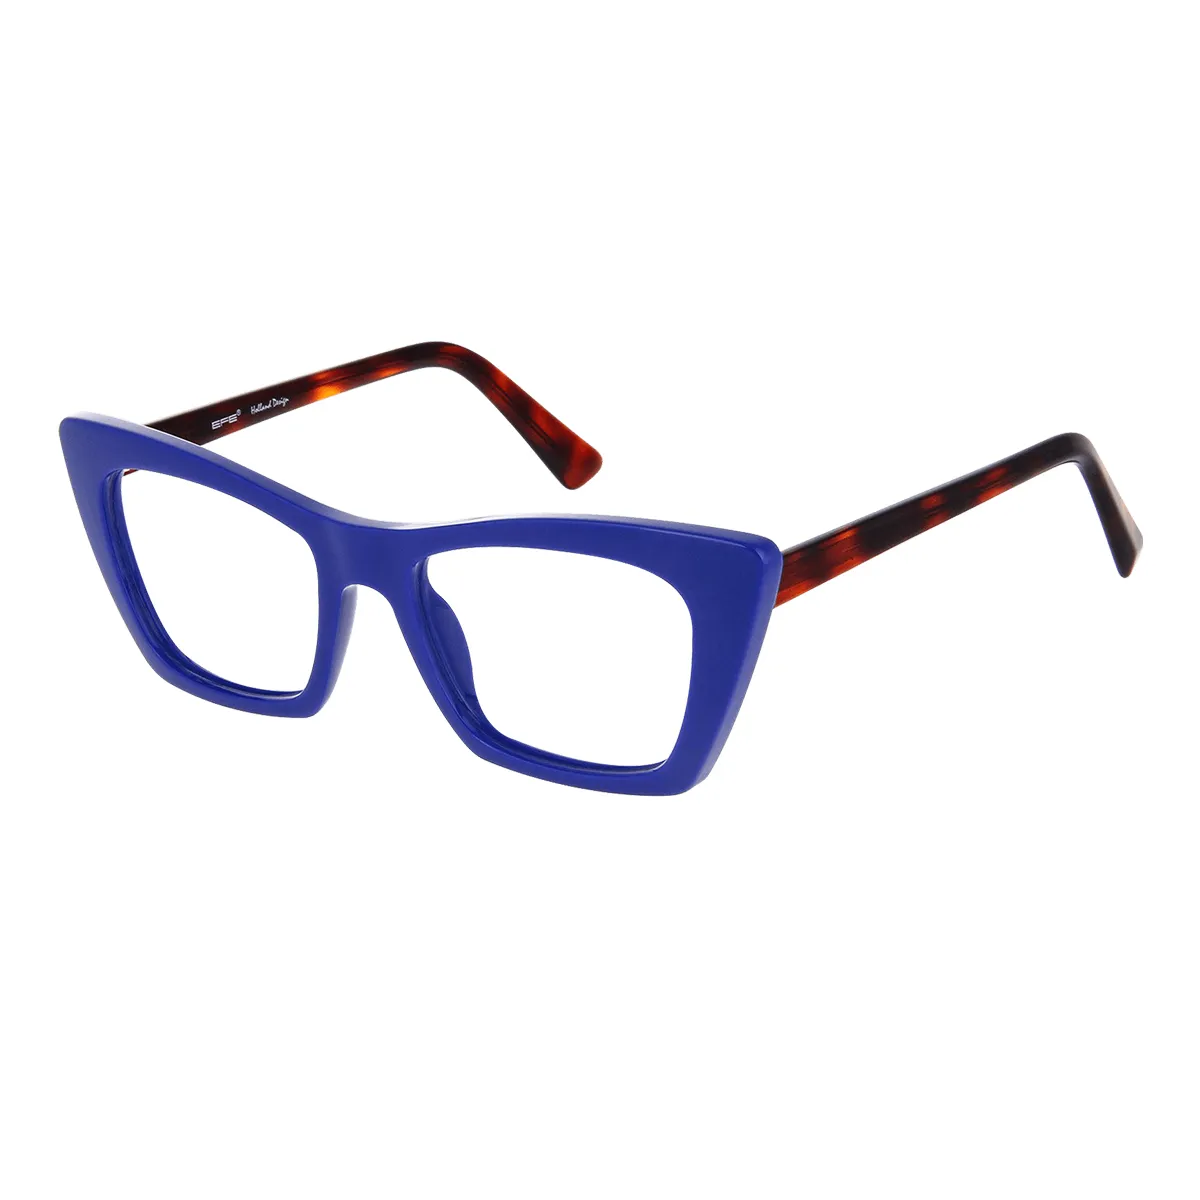 Alberta - Cat-eye Blue Glasses for Women